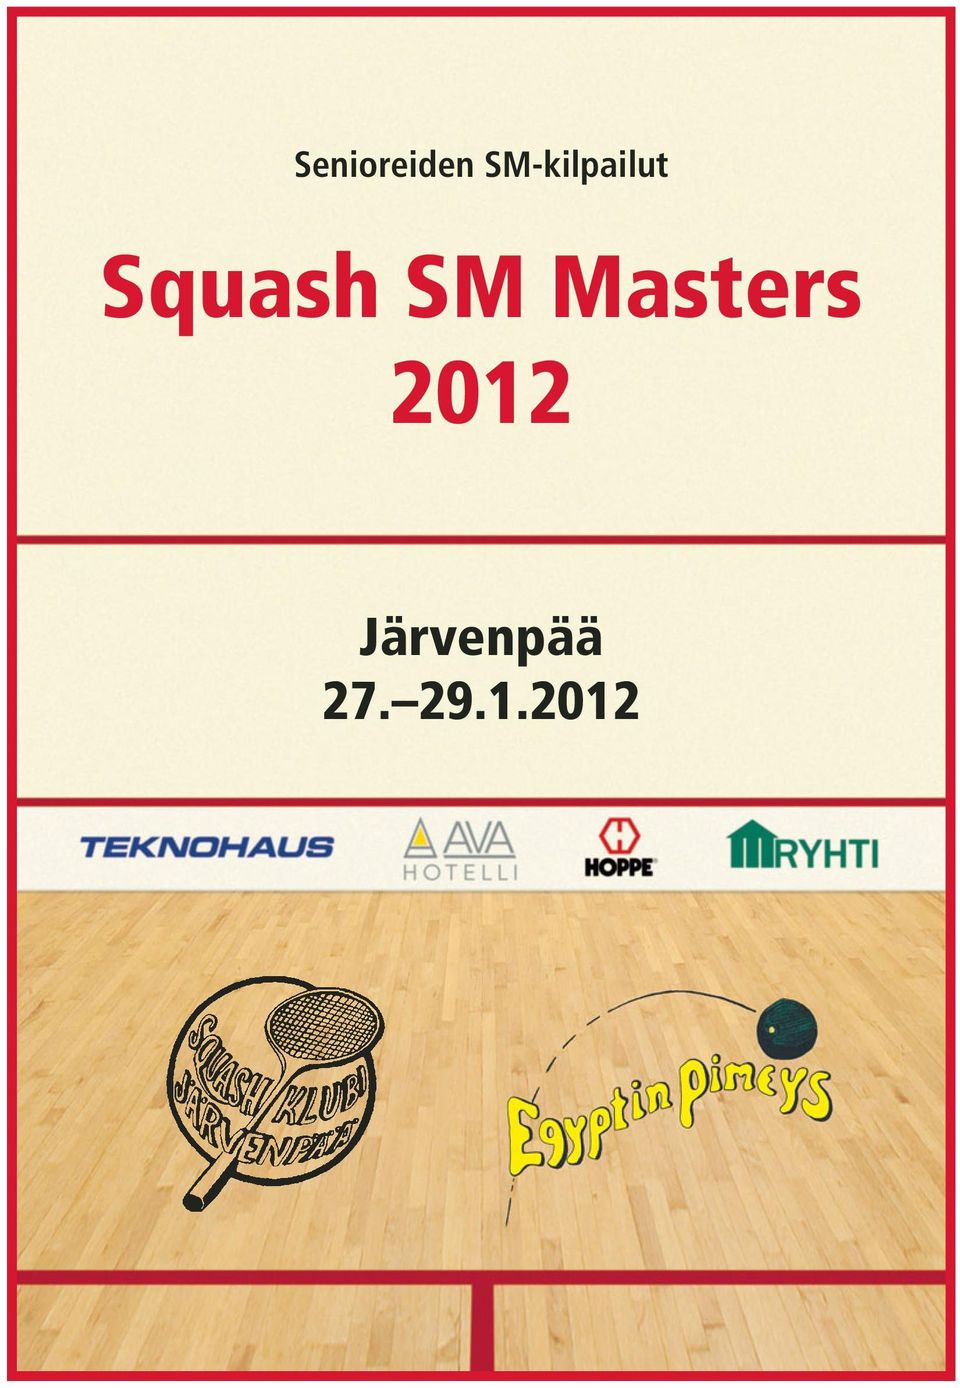 Squash SM Masters